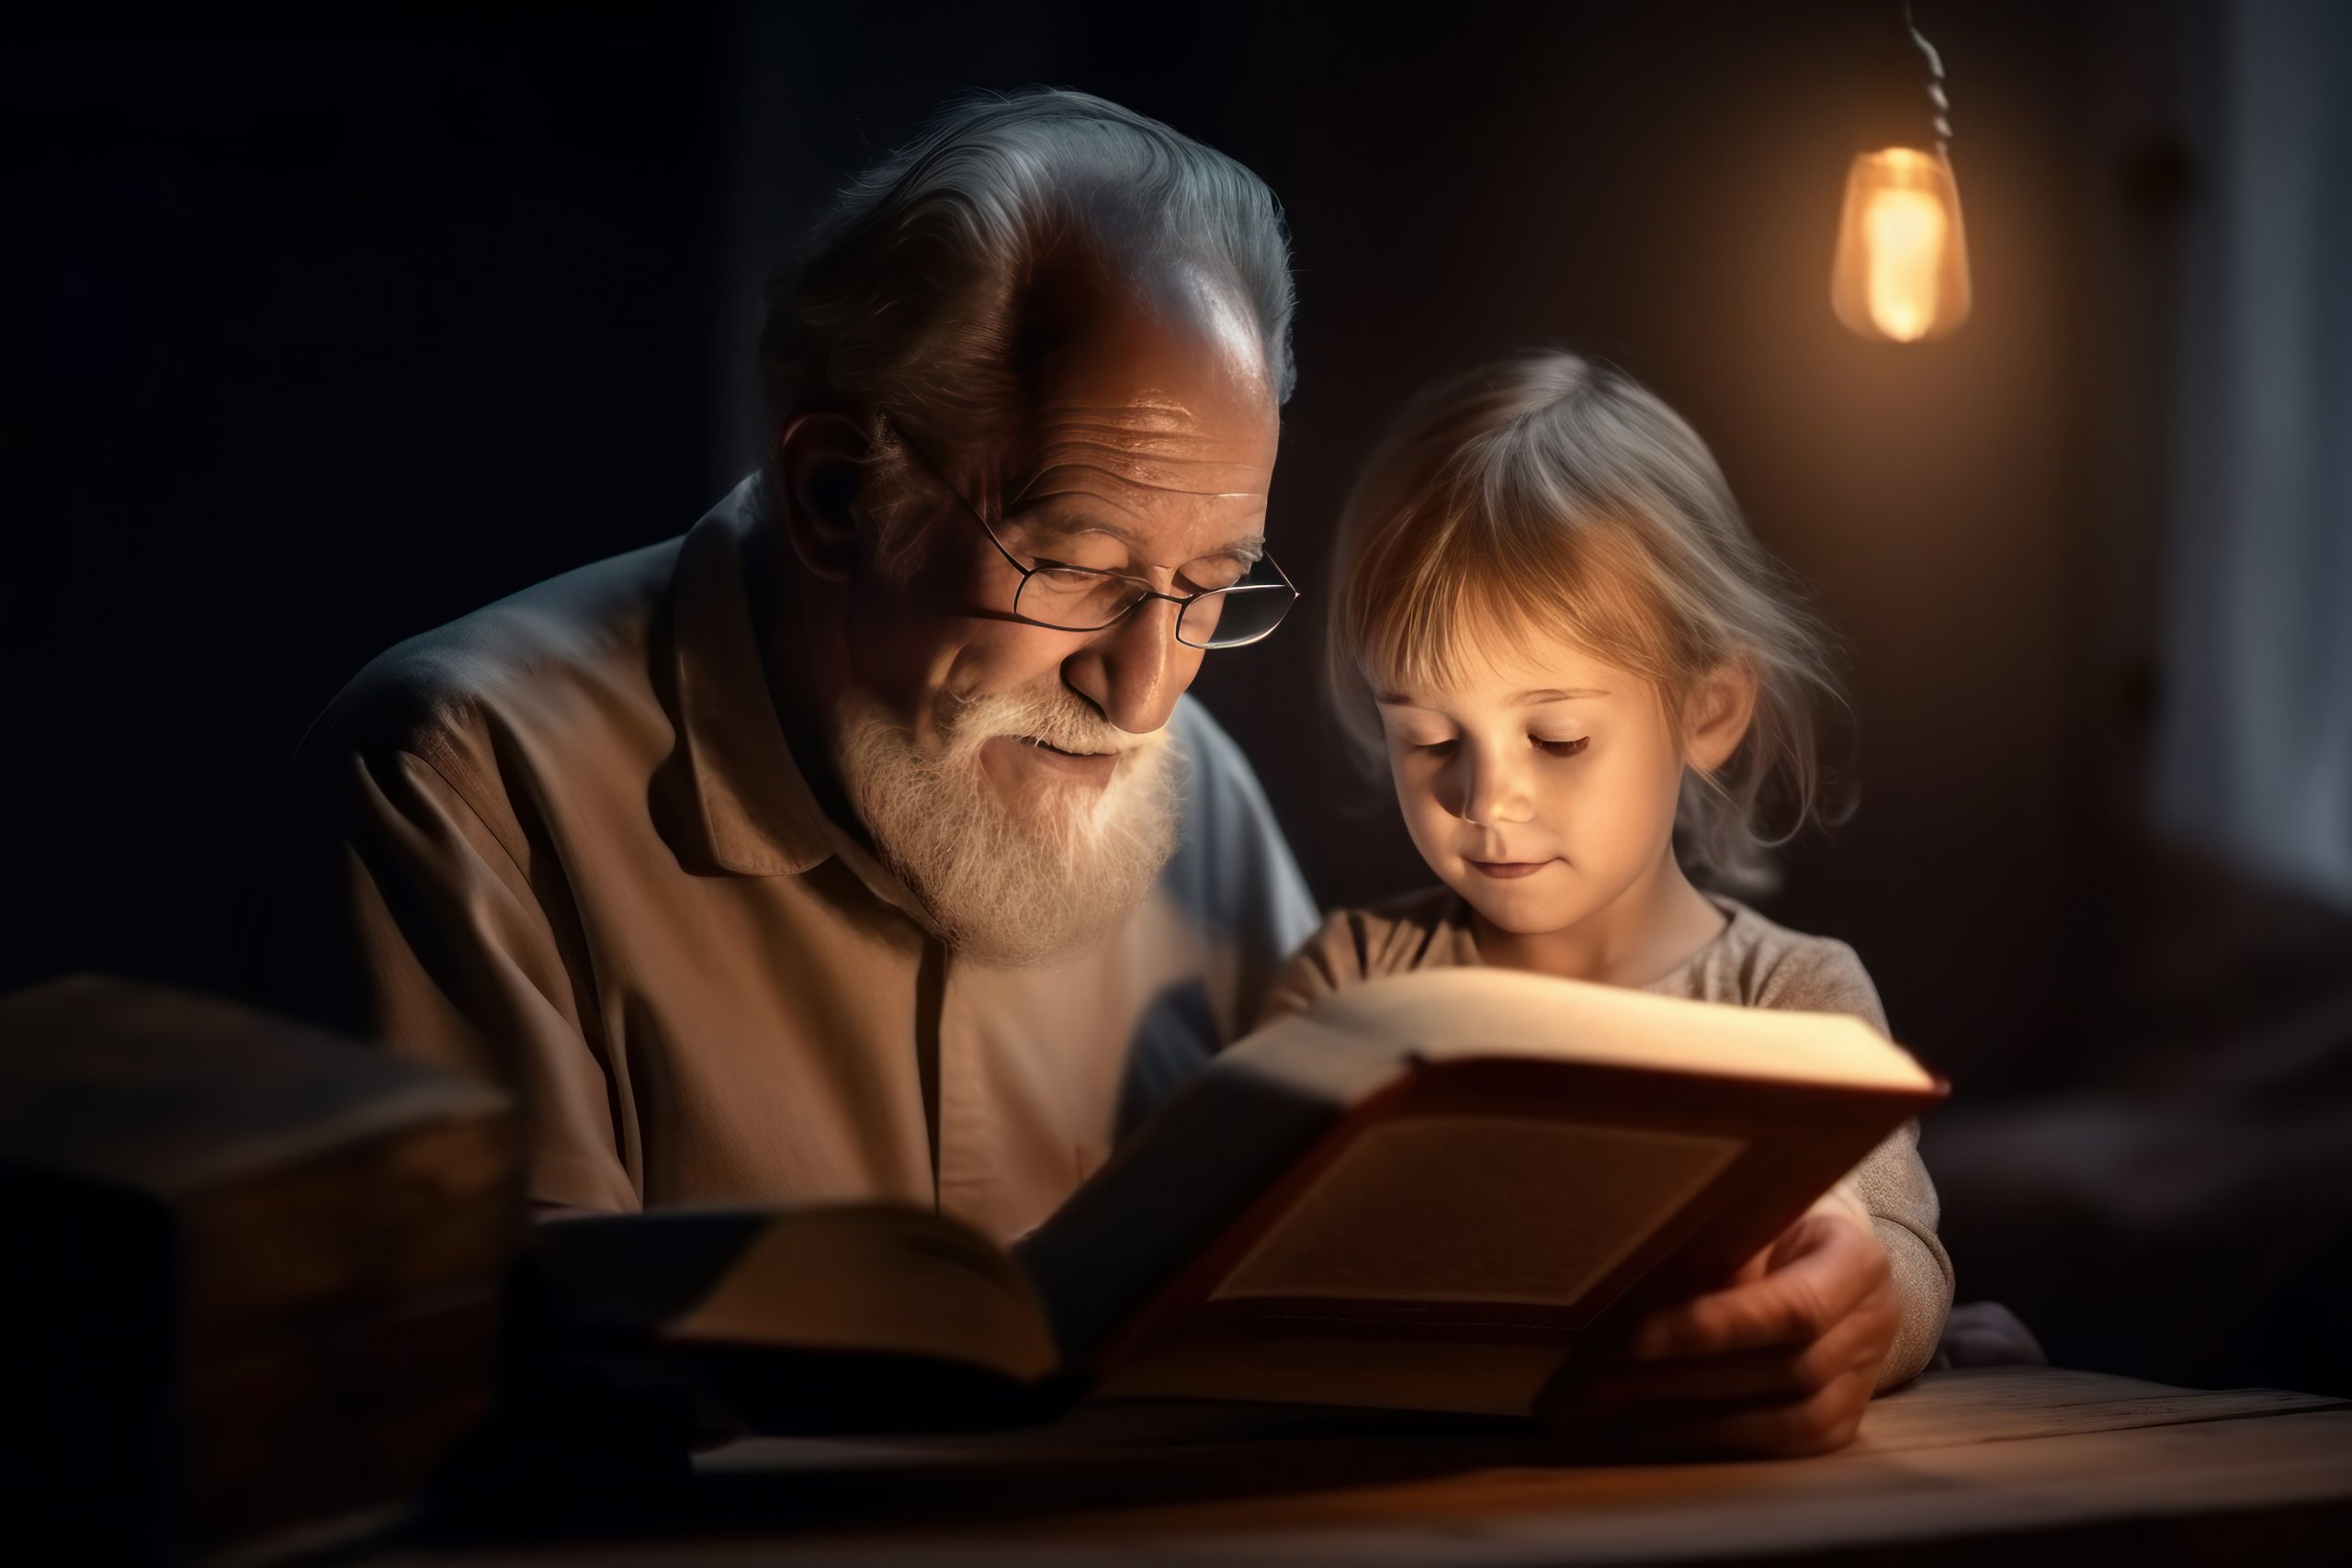 Ein älterer Herr mit grauen, zurückgekämmten Haaren und Bart liest einem Mädchen aus einem Buch vor. Im Hintergrund leuchtet eine Glühlampe. Foto: StockAdobe/mikey